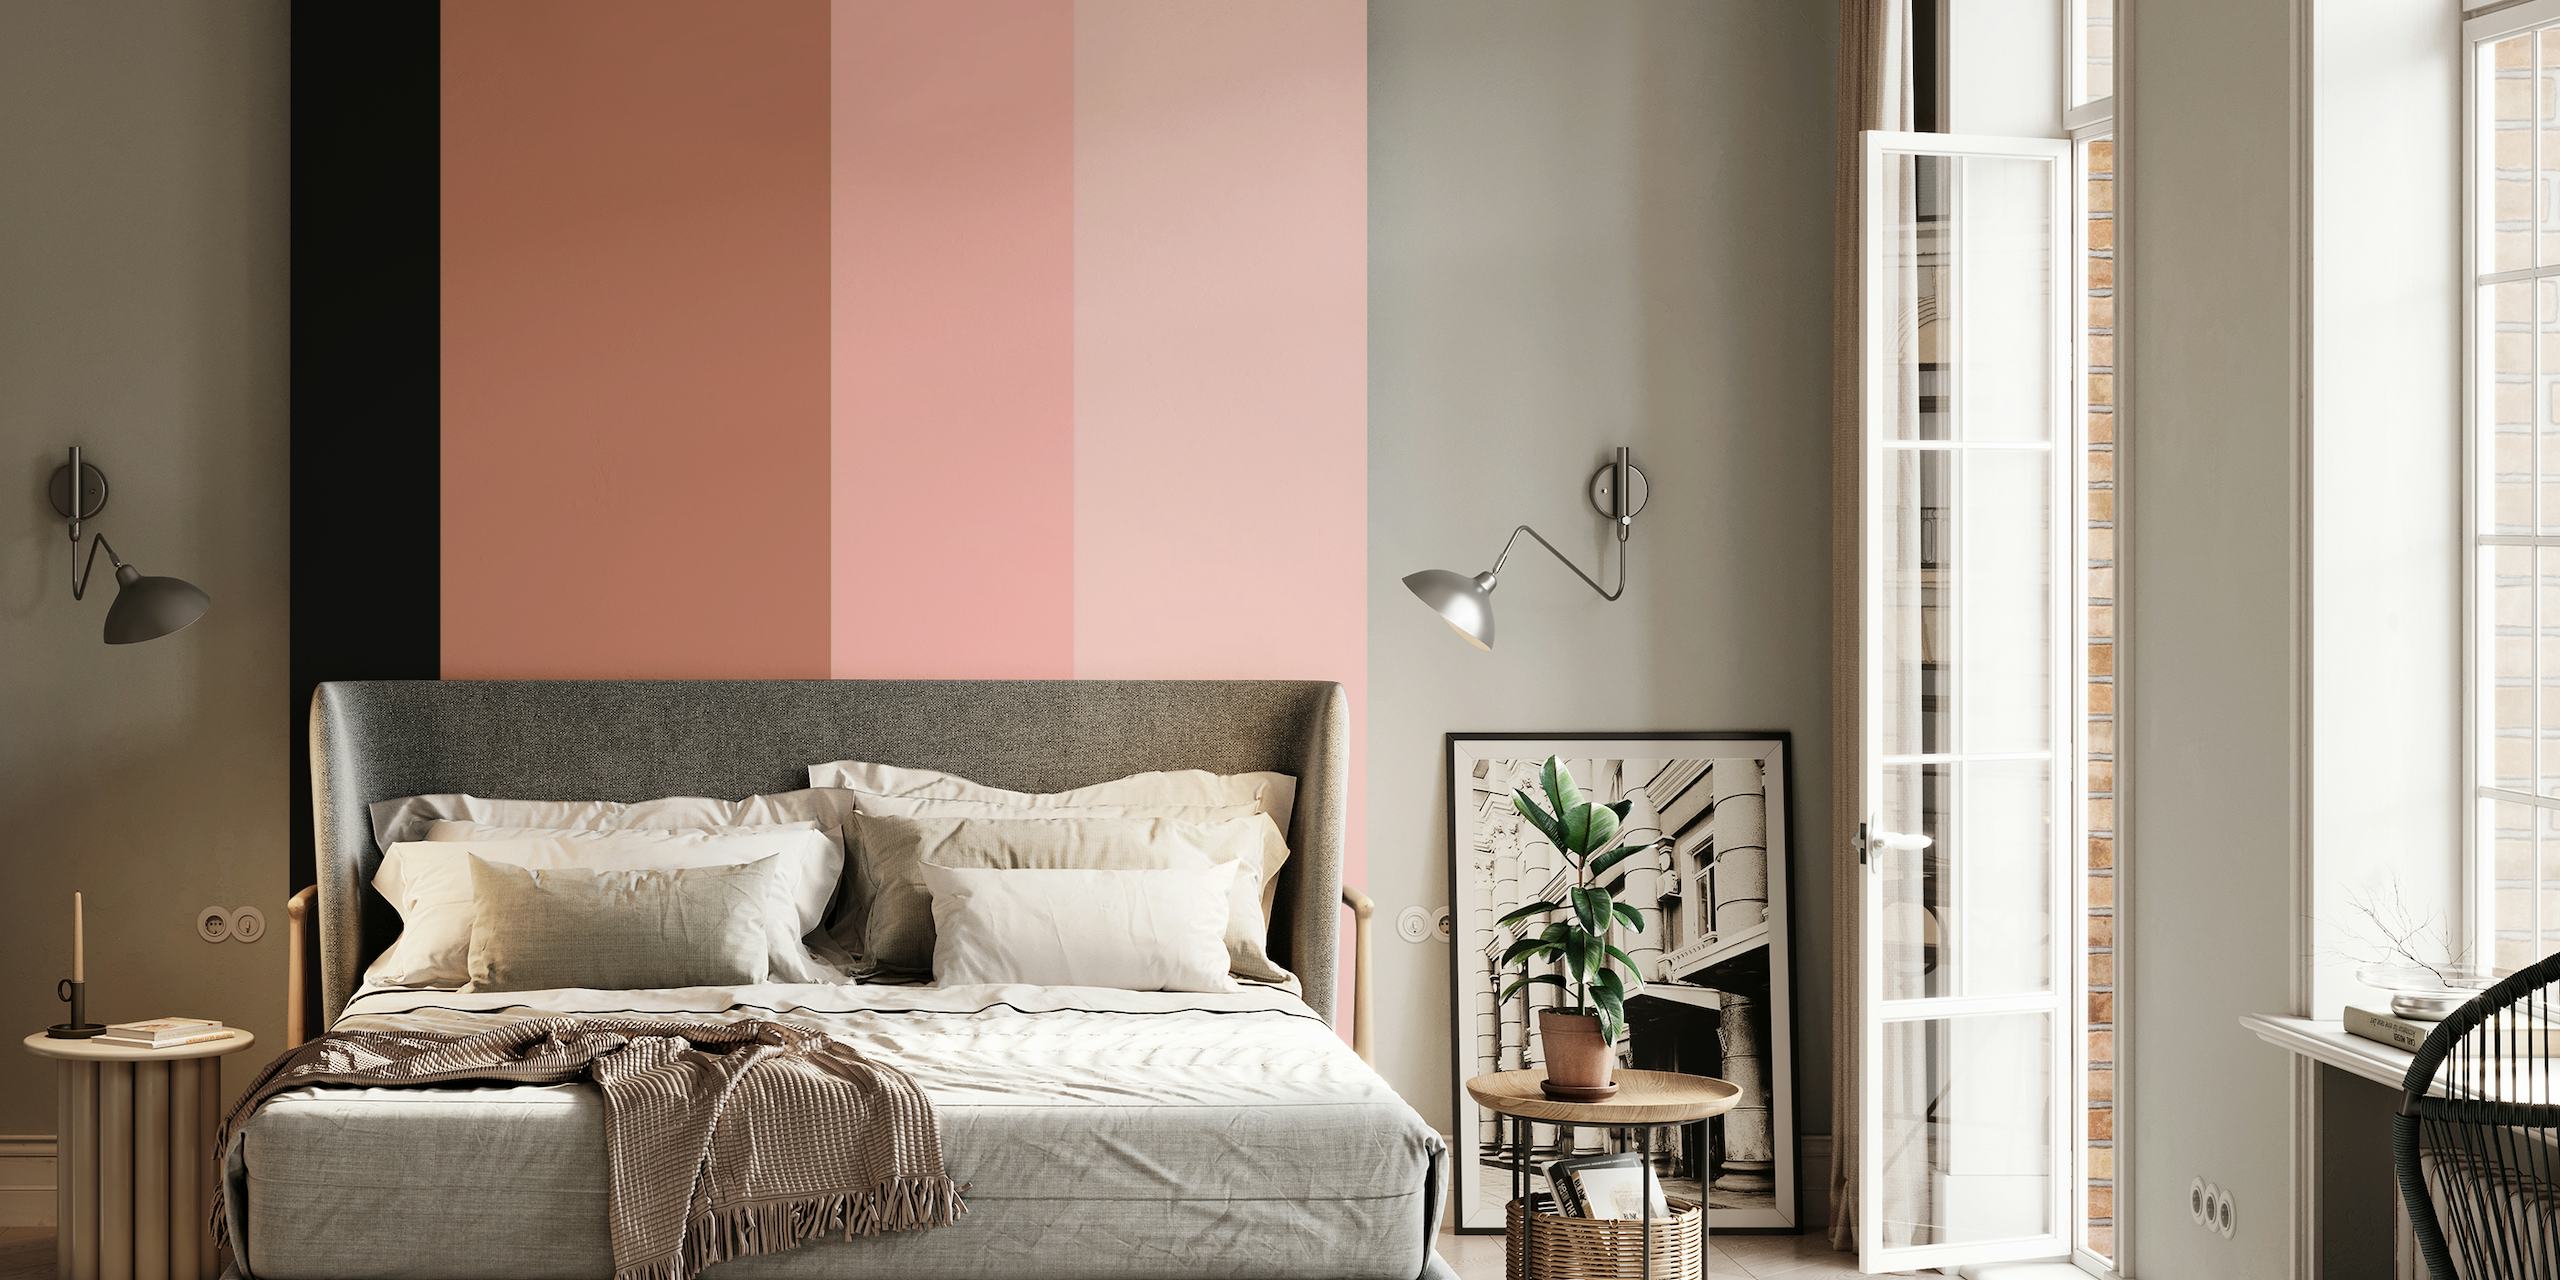 Fotomural vinílico de parede simples com superfície rosa blush